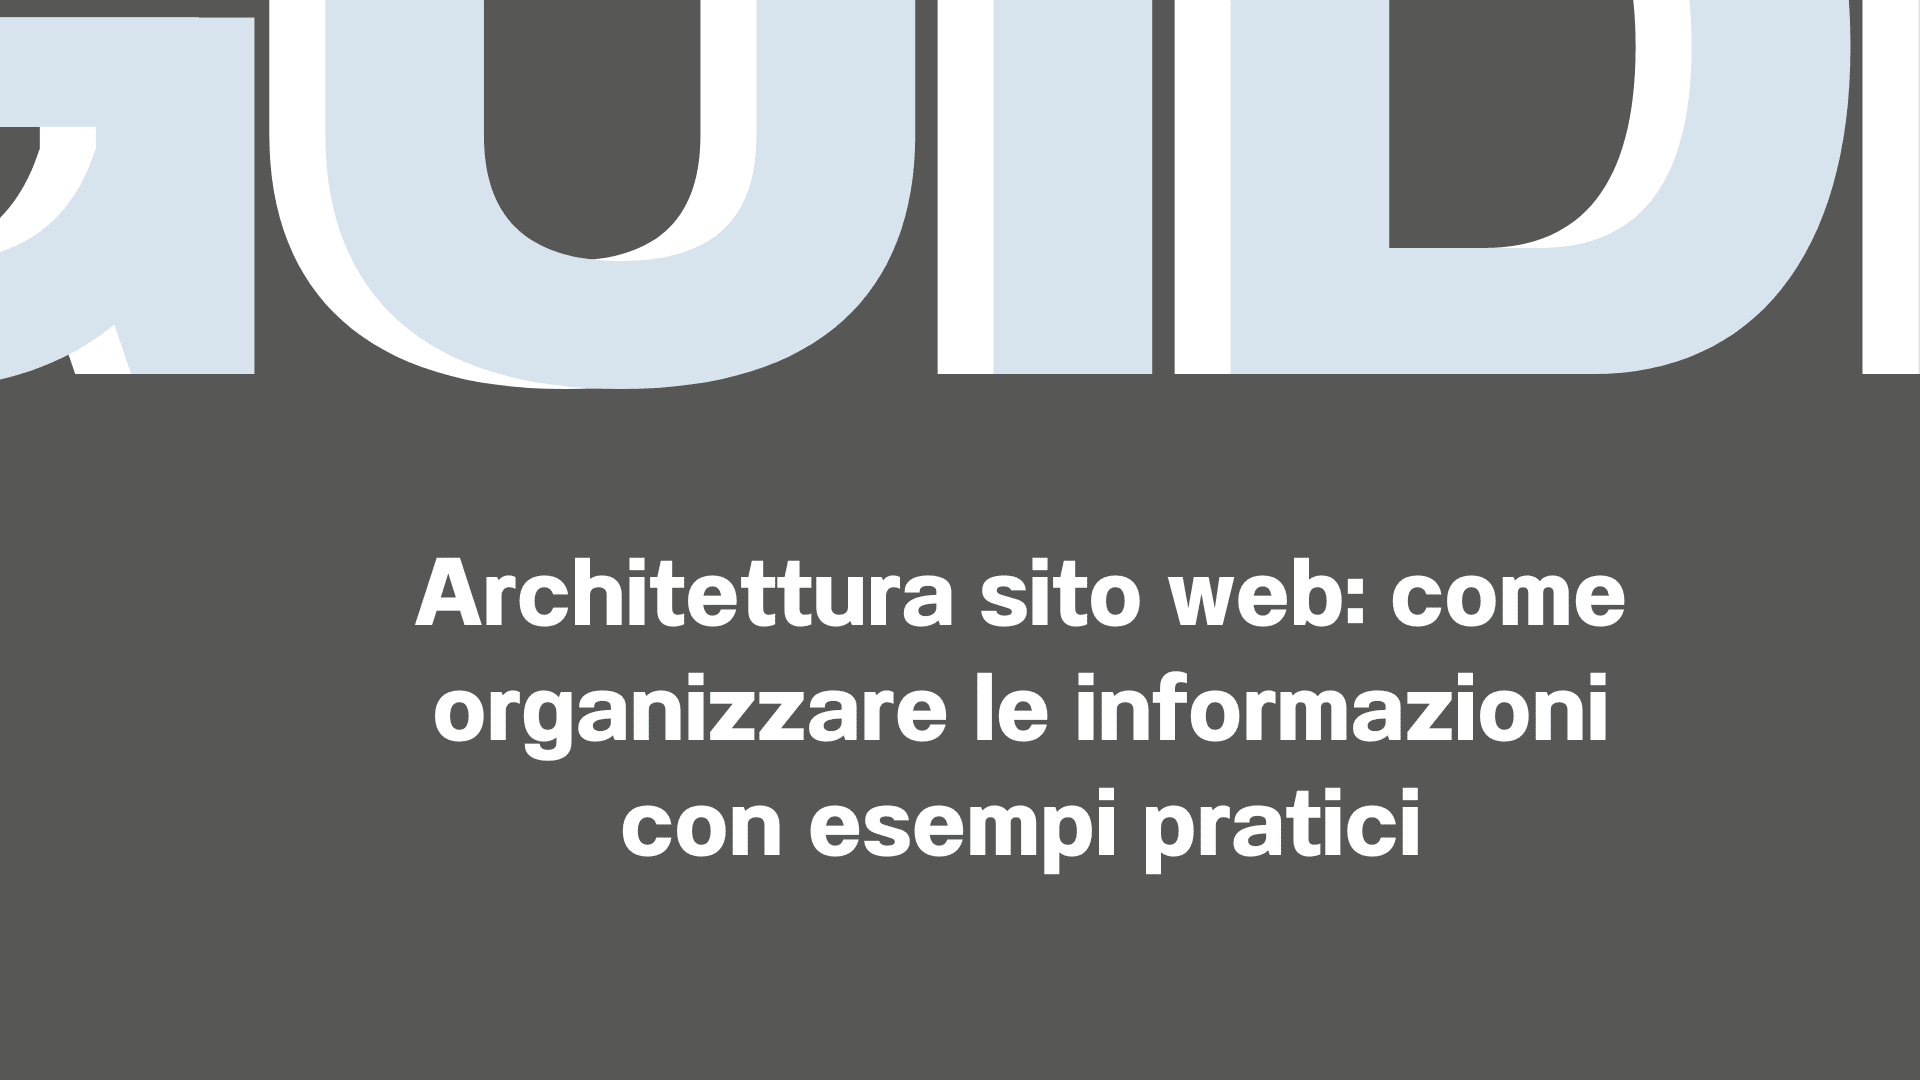 Architettura sito web come organizzare le informazioni con esempi pratici